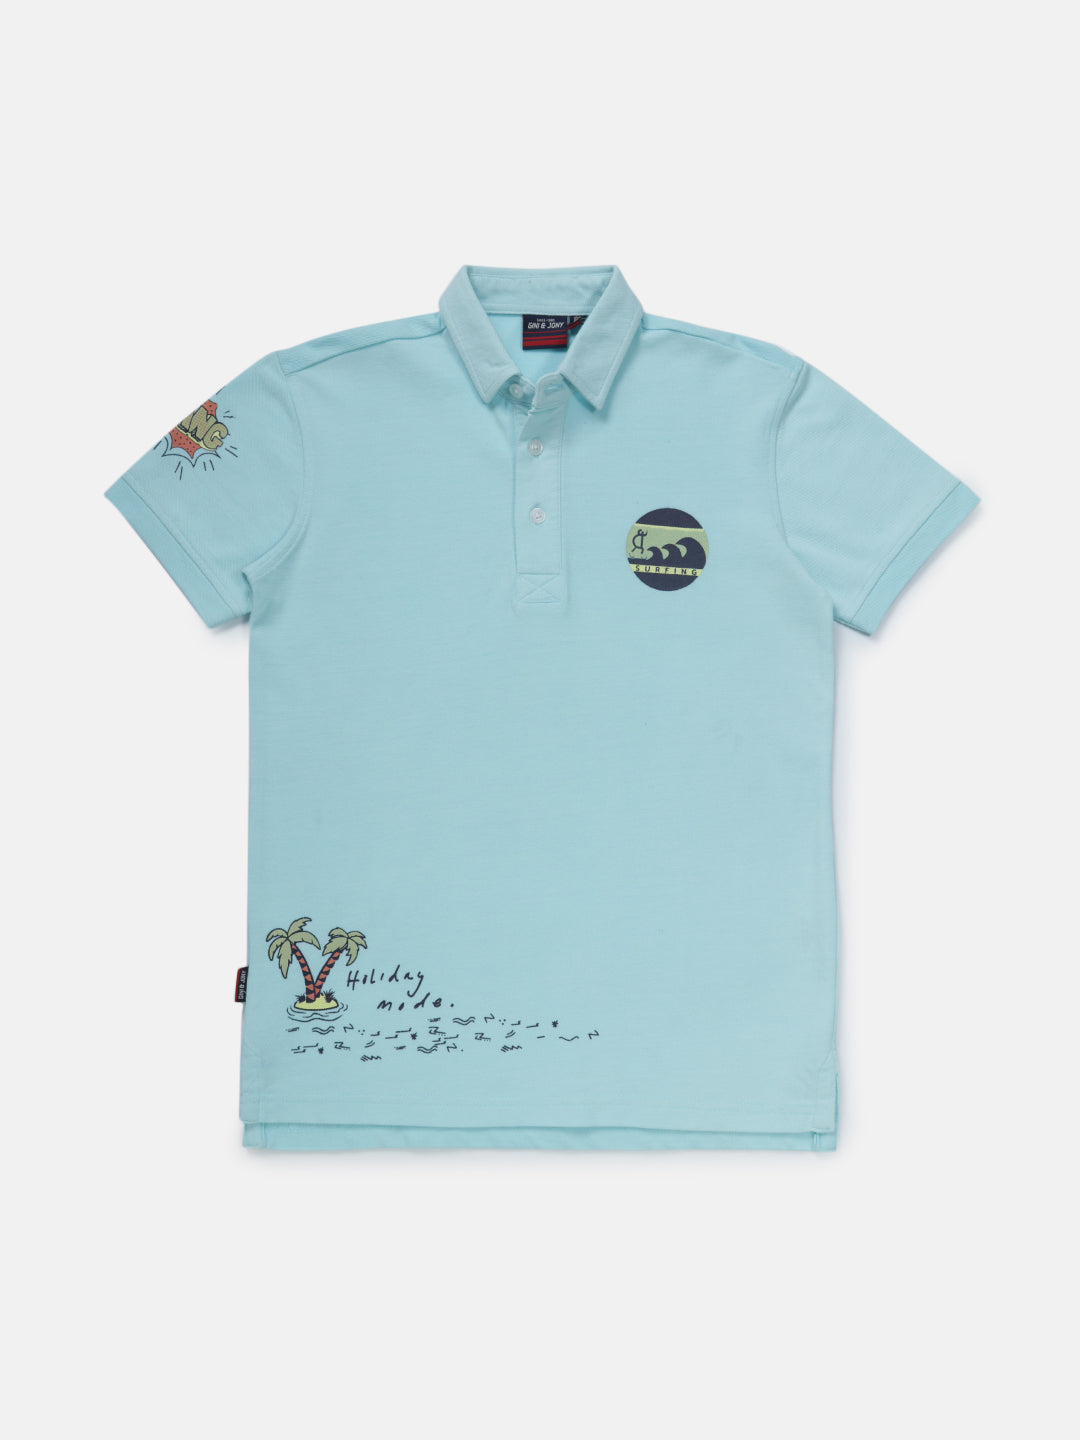 Boys Blue Printed Knits Polo T-Shirt